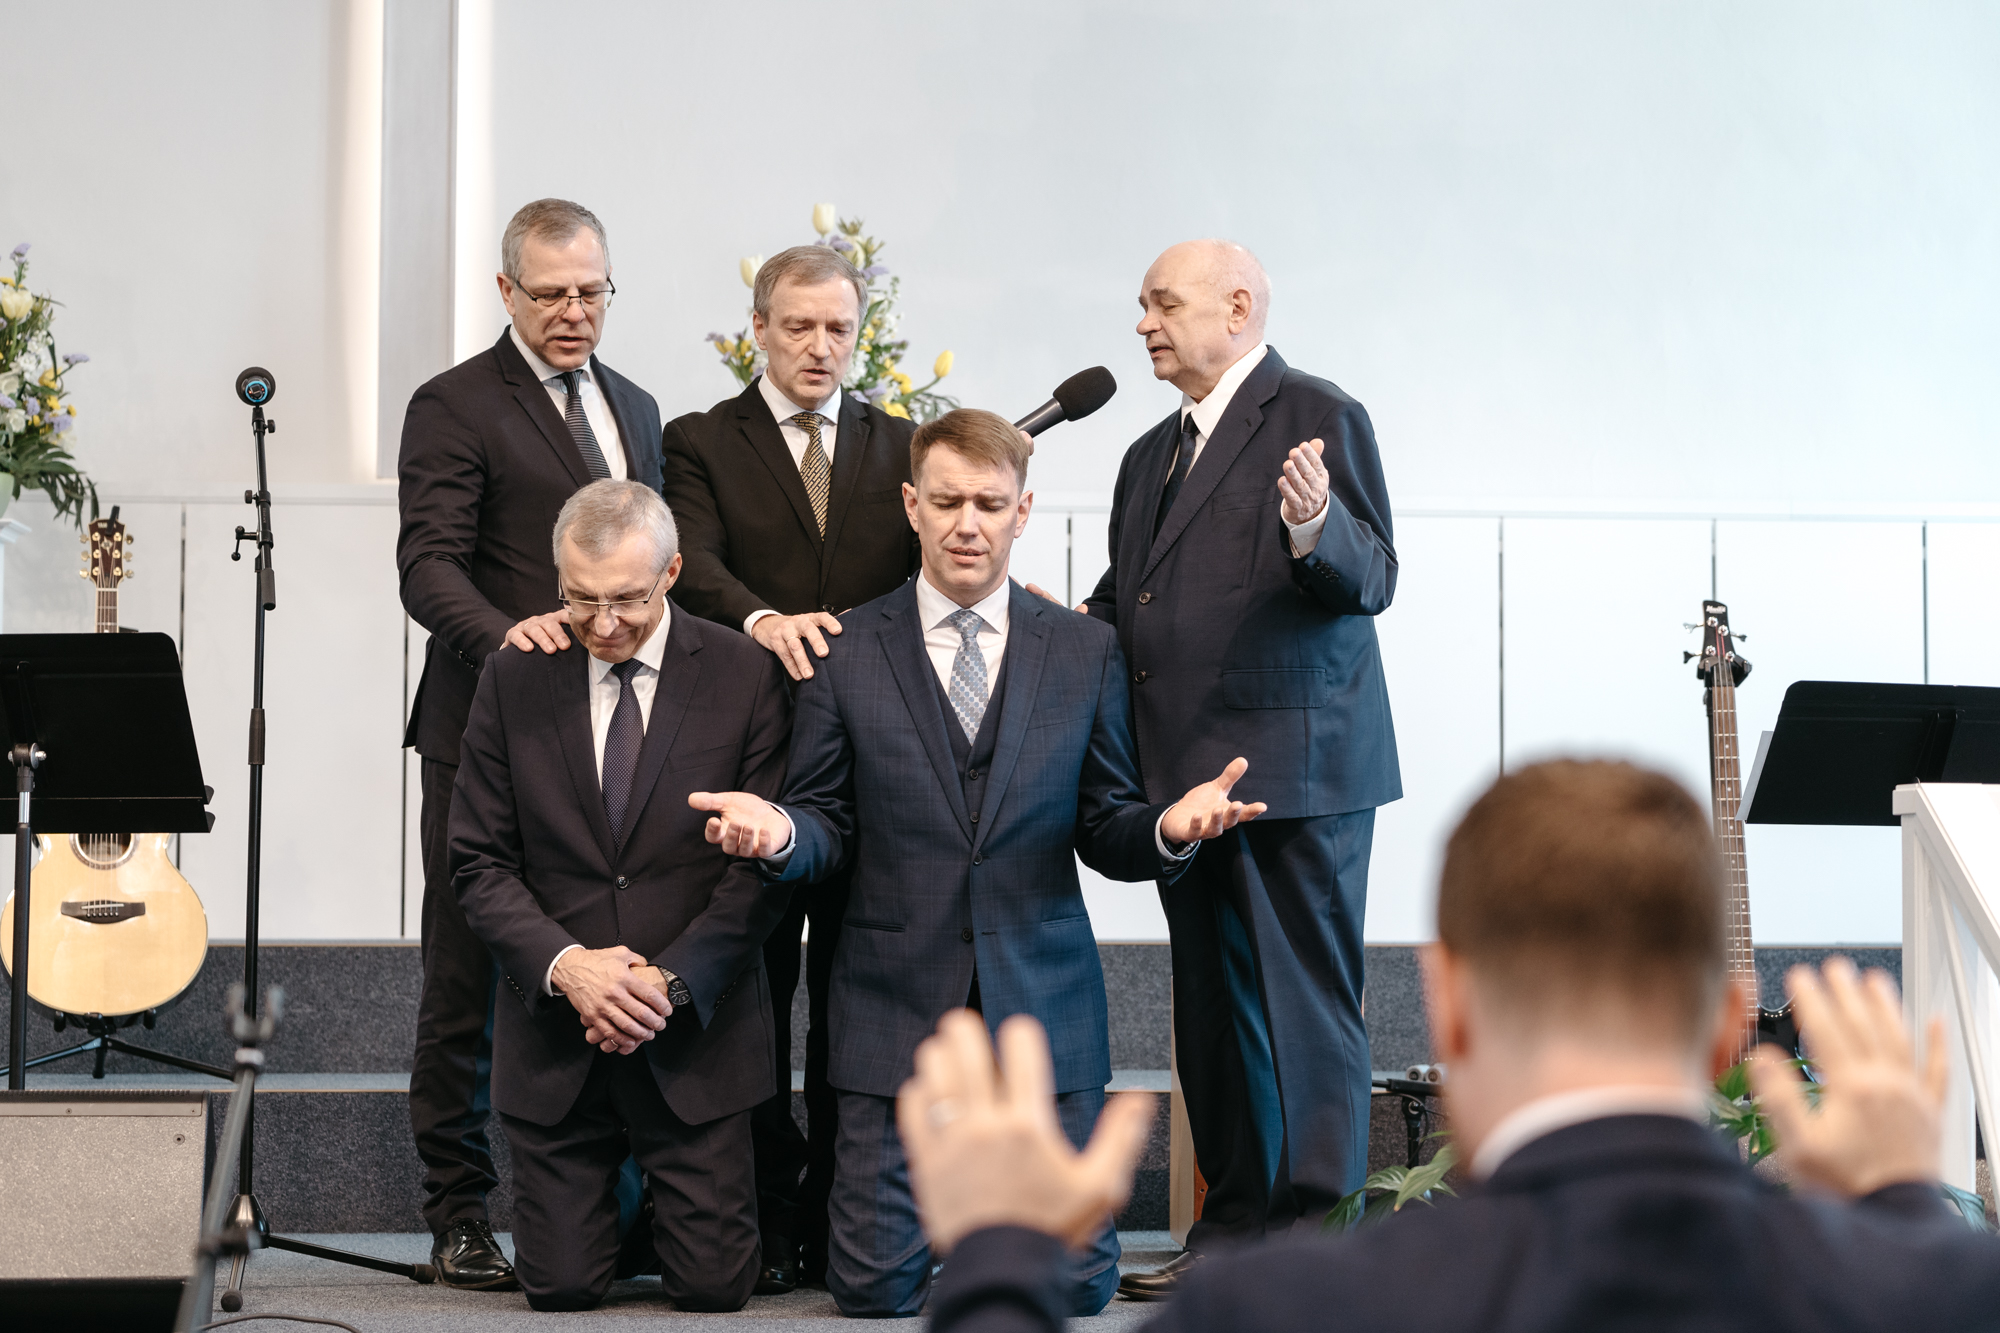 Möödunud nädalavahetusel toimunud aastakonverentsil valisid koguduste delegaadid liidule uued juhid. Eesti EKB Koguduste Liidu presidendiks valiti Rakvere Karme